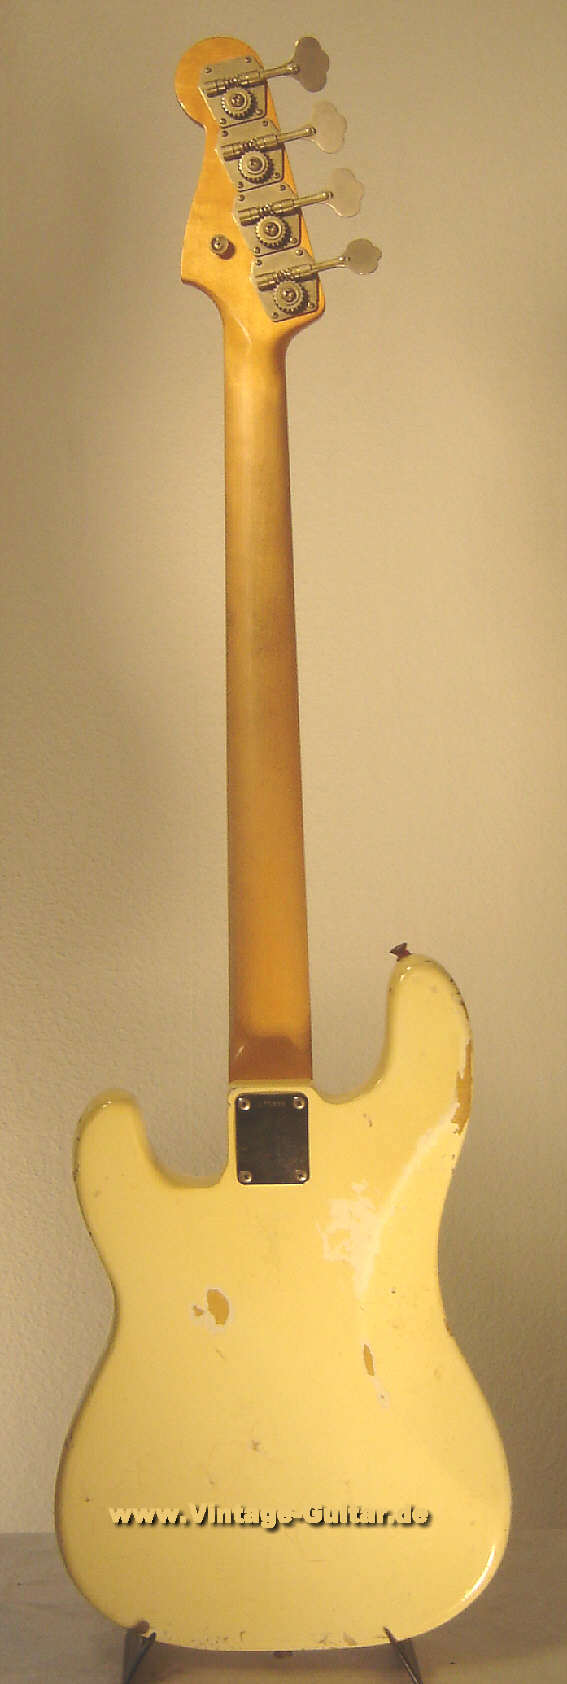 Fender_Precision_Bass_1965-olympic-white-back.jpg